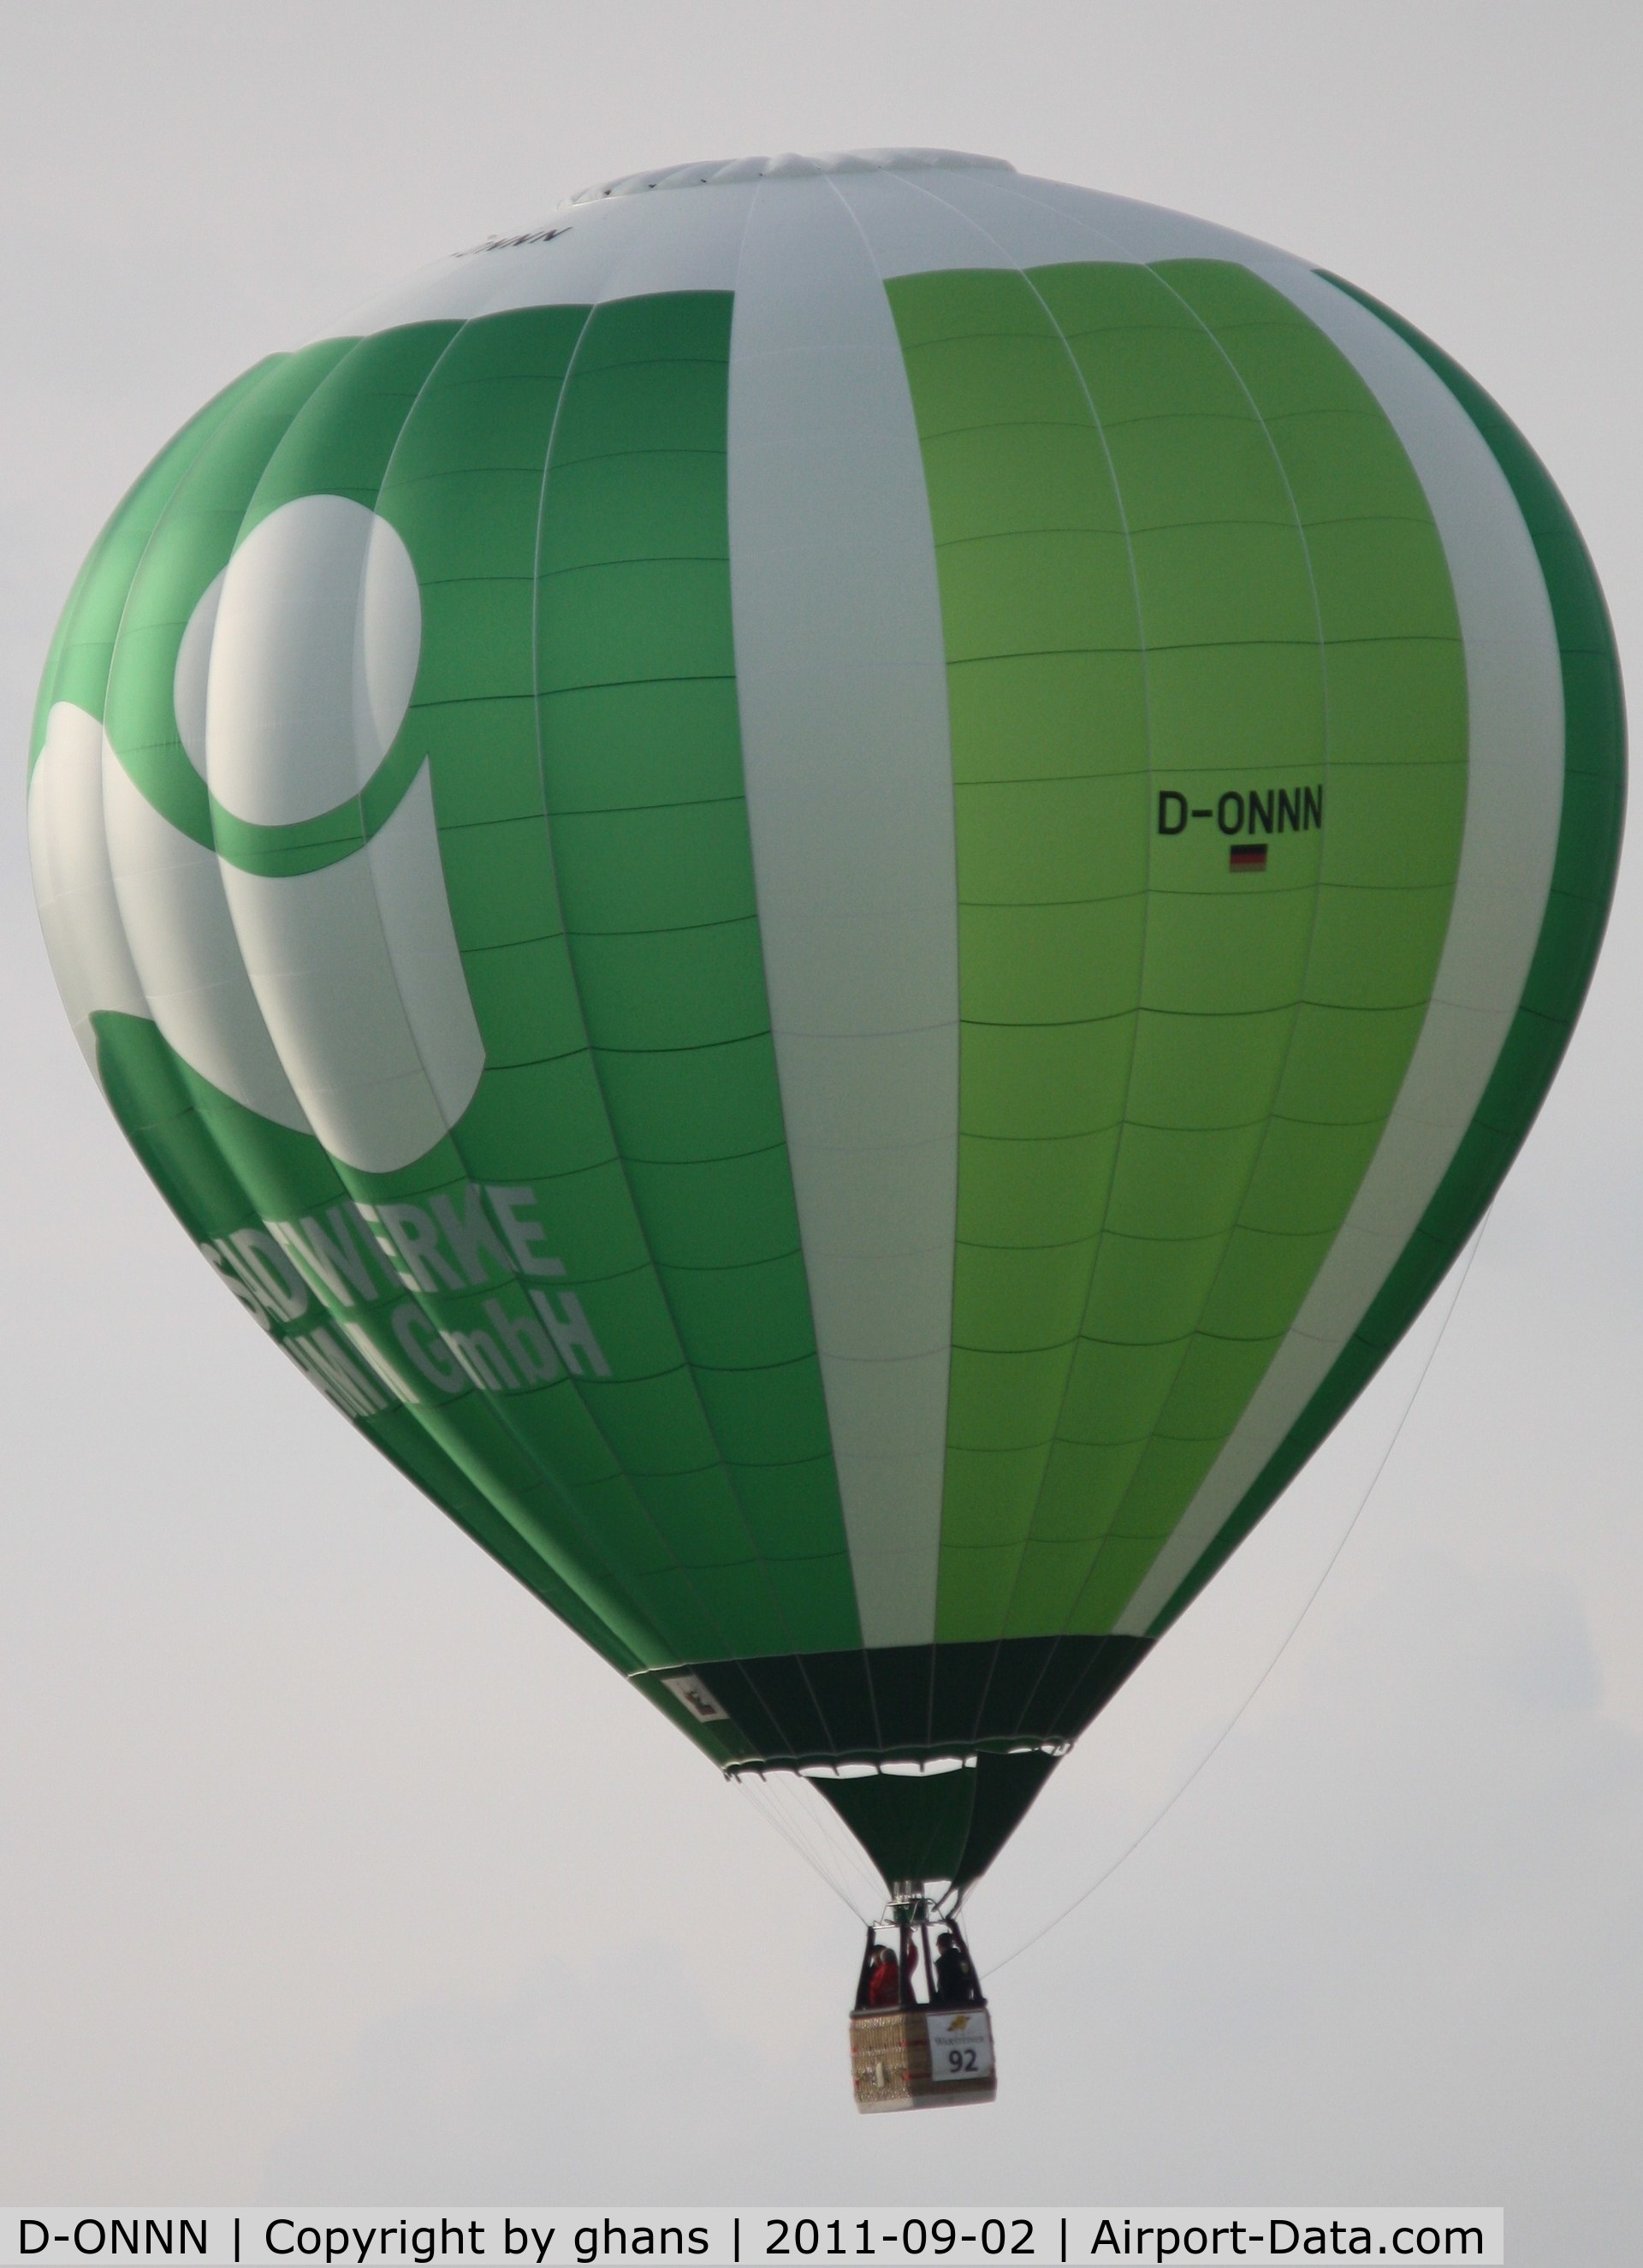 D-ONNN, 2004 Schroeder Fire Balloons G C/N 1096, WIM 2011
'Stadtwerke Hamm'